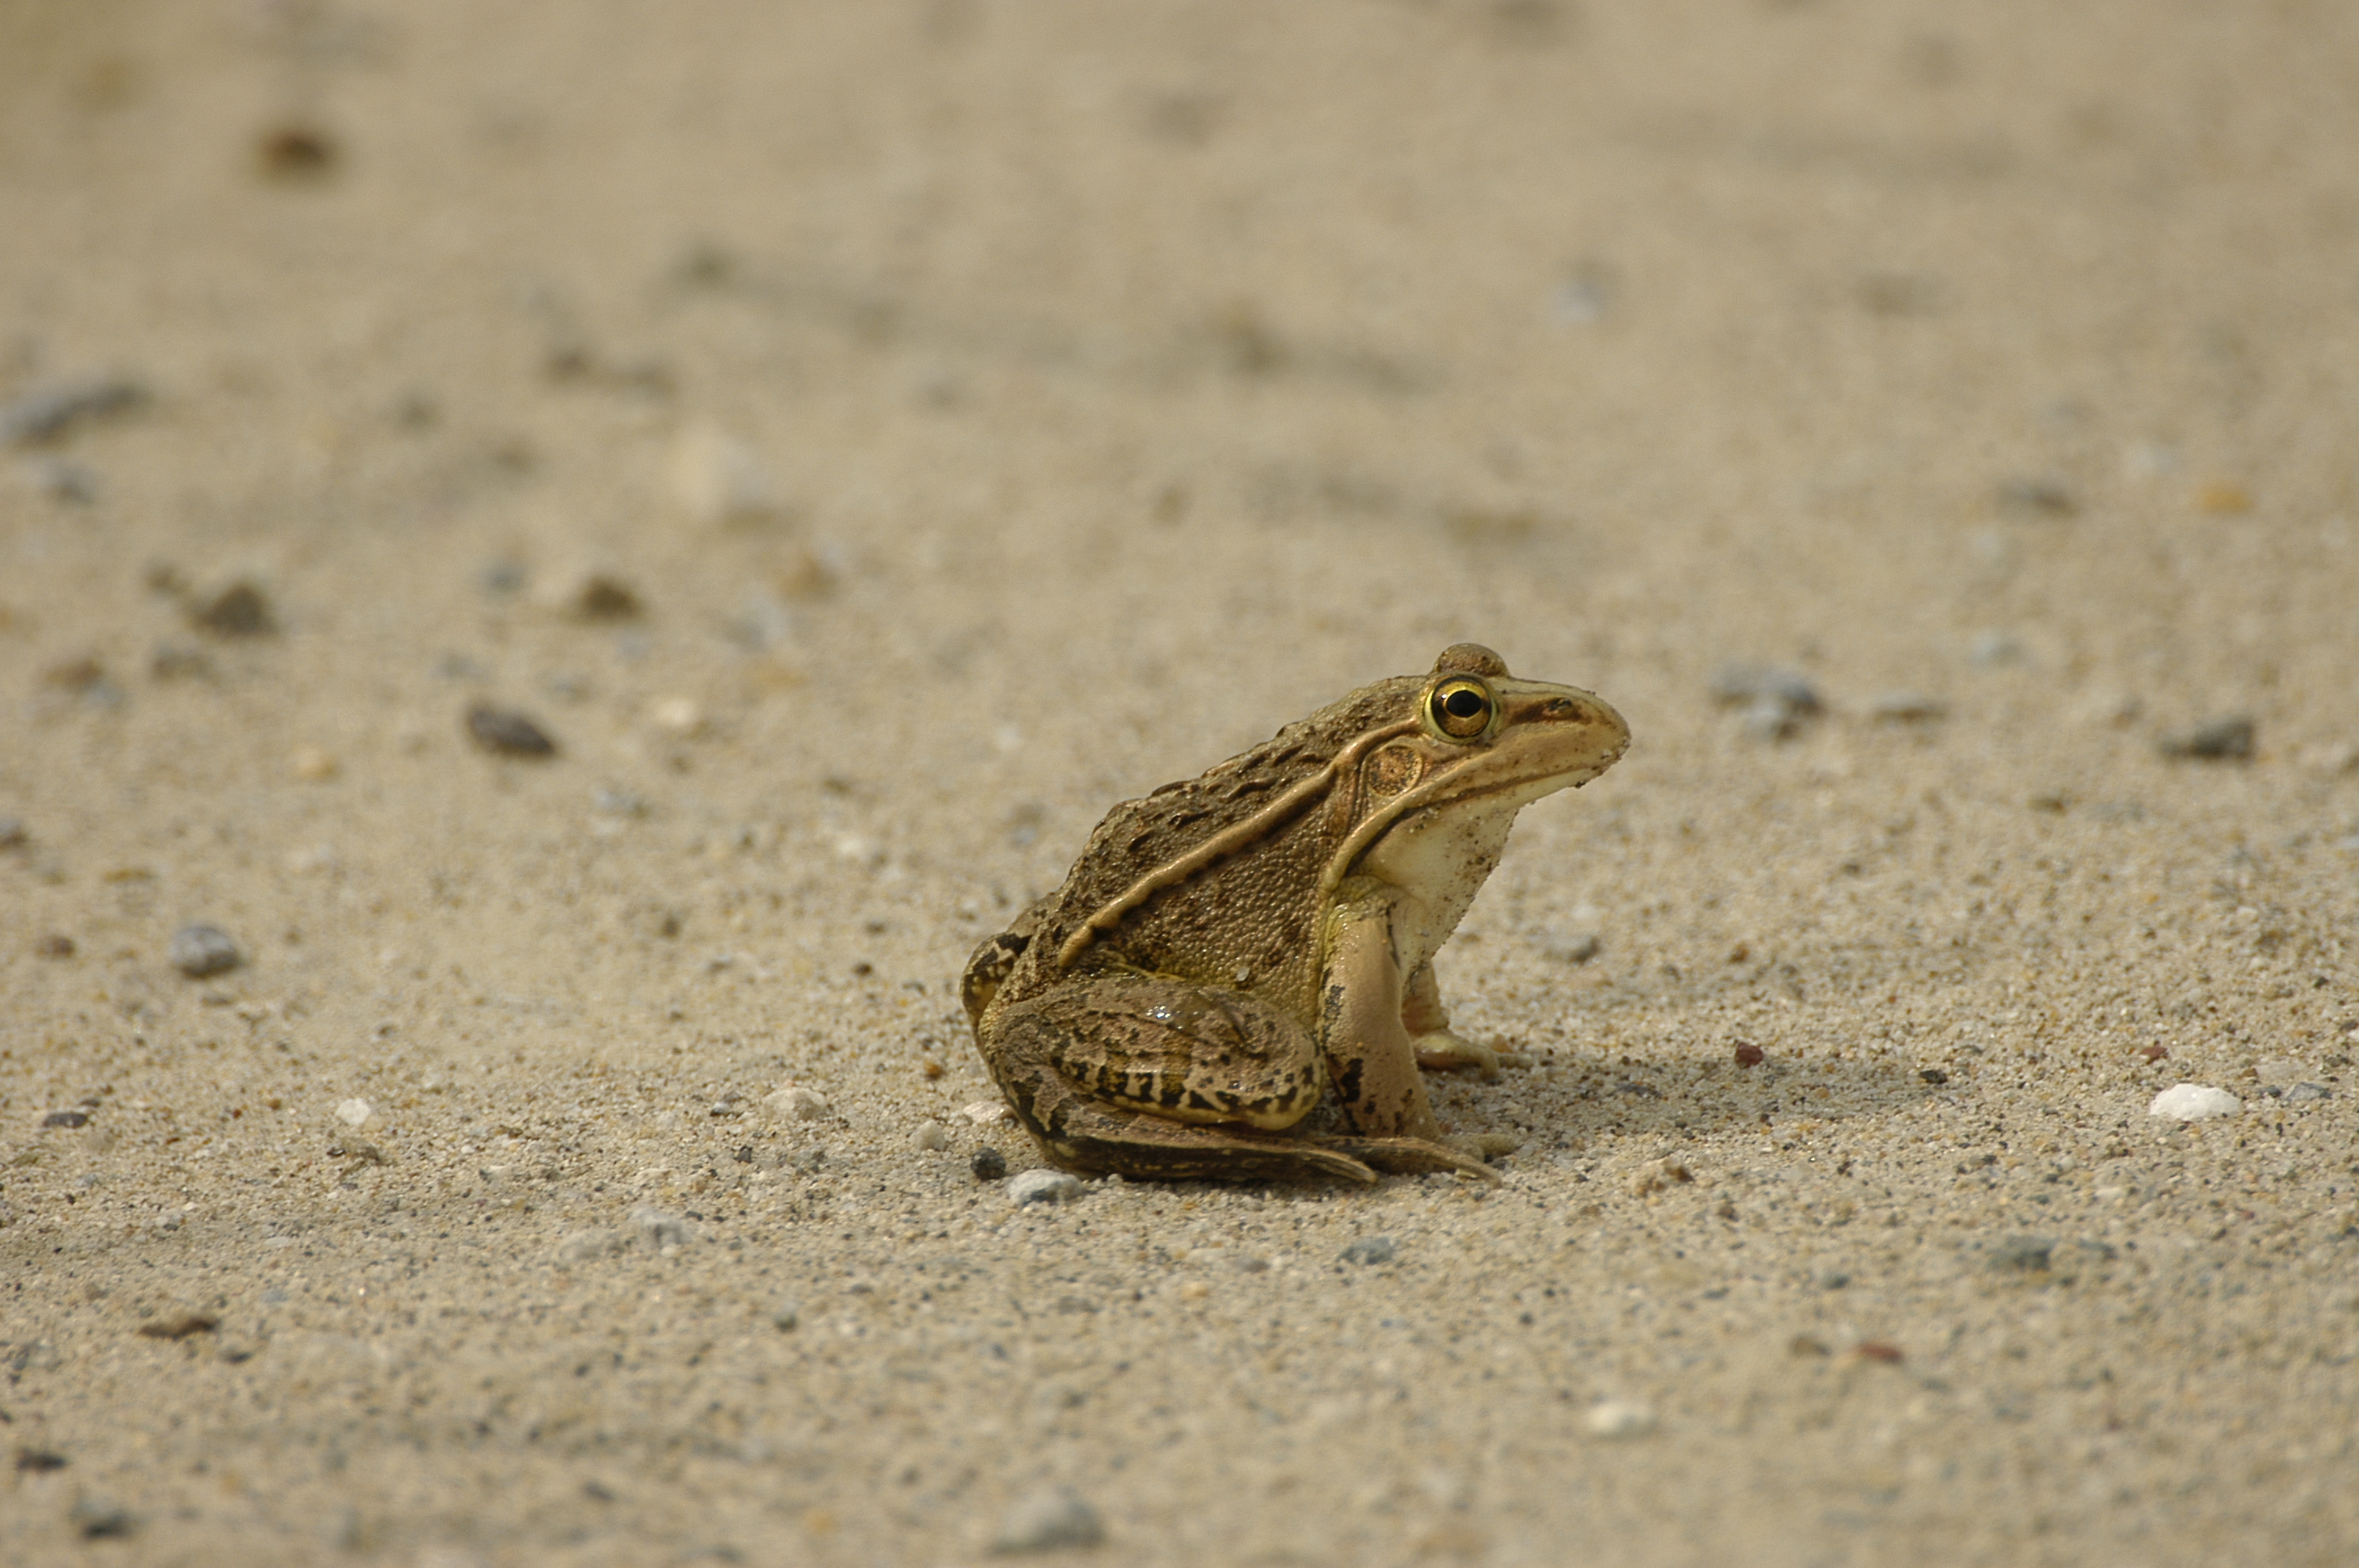 개구리를 깨우는 경칩의 생태학